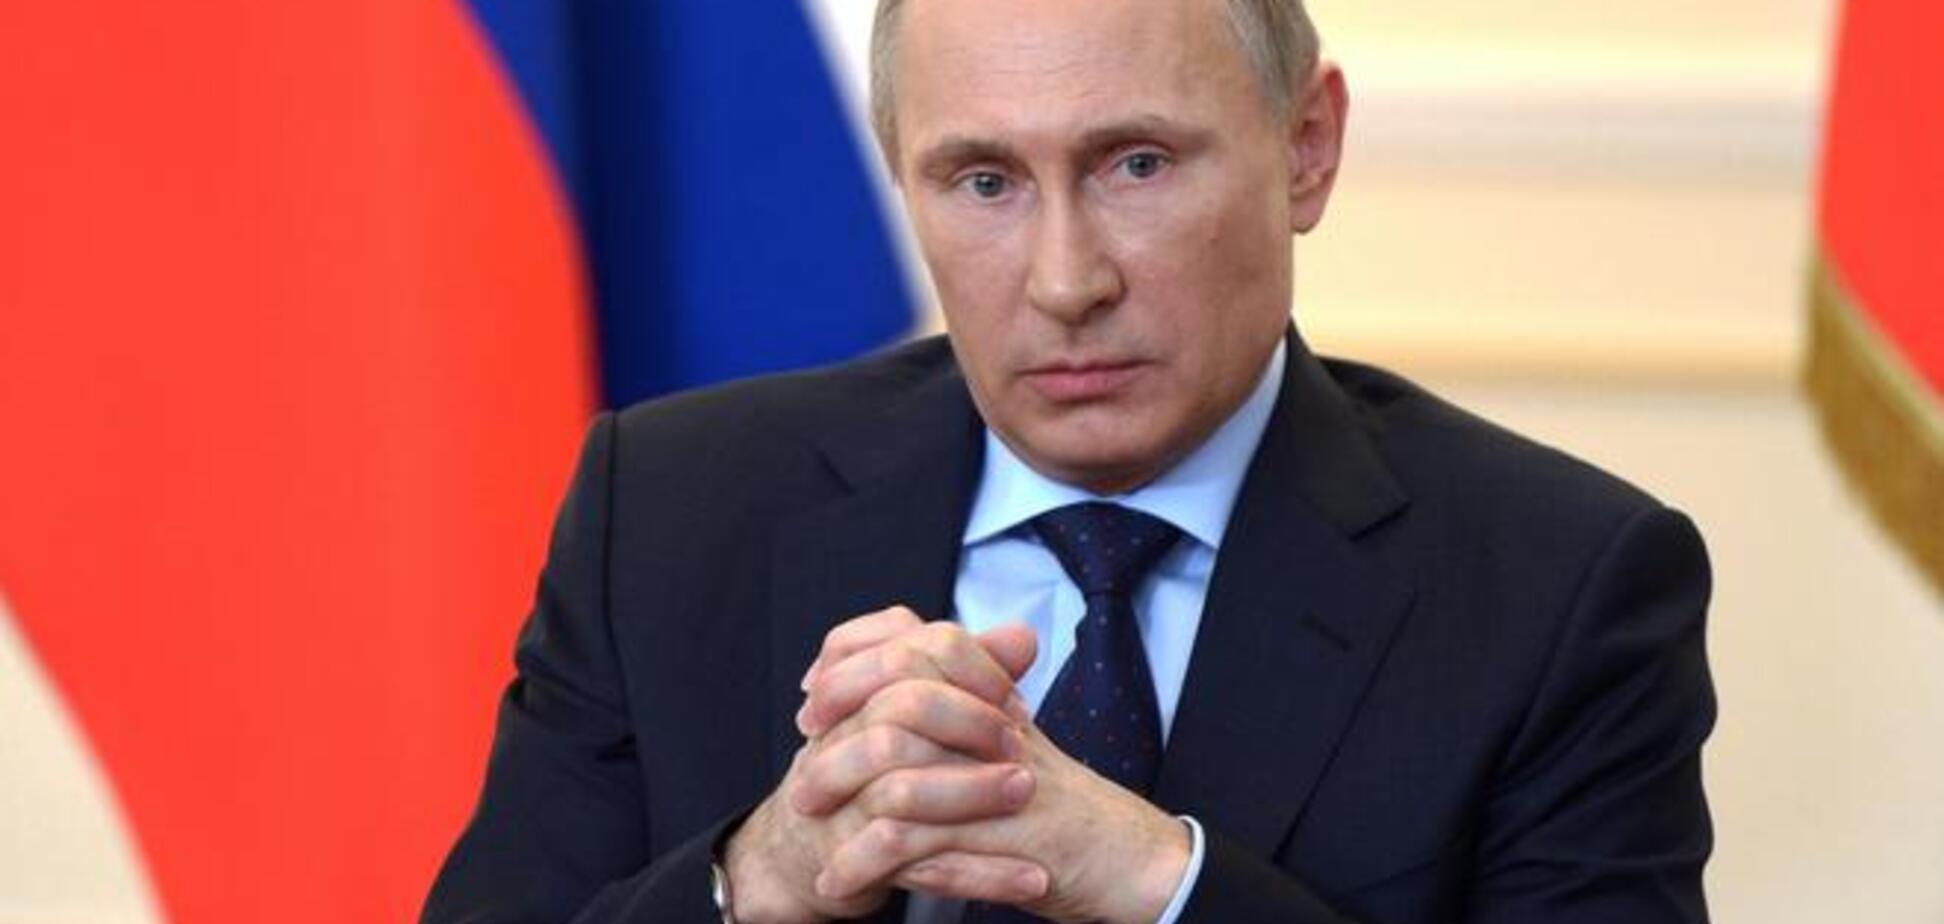 Військовий експерт розповів, як змусити Путіна припинити війну й повернути Крим